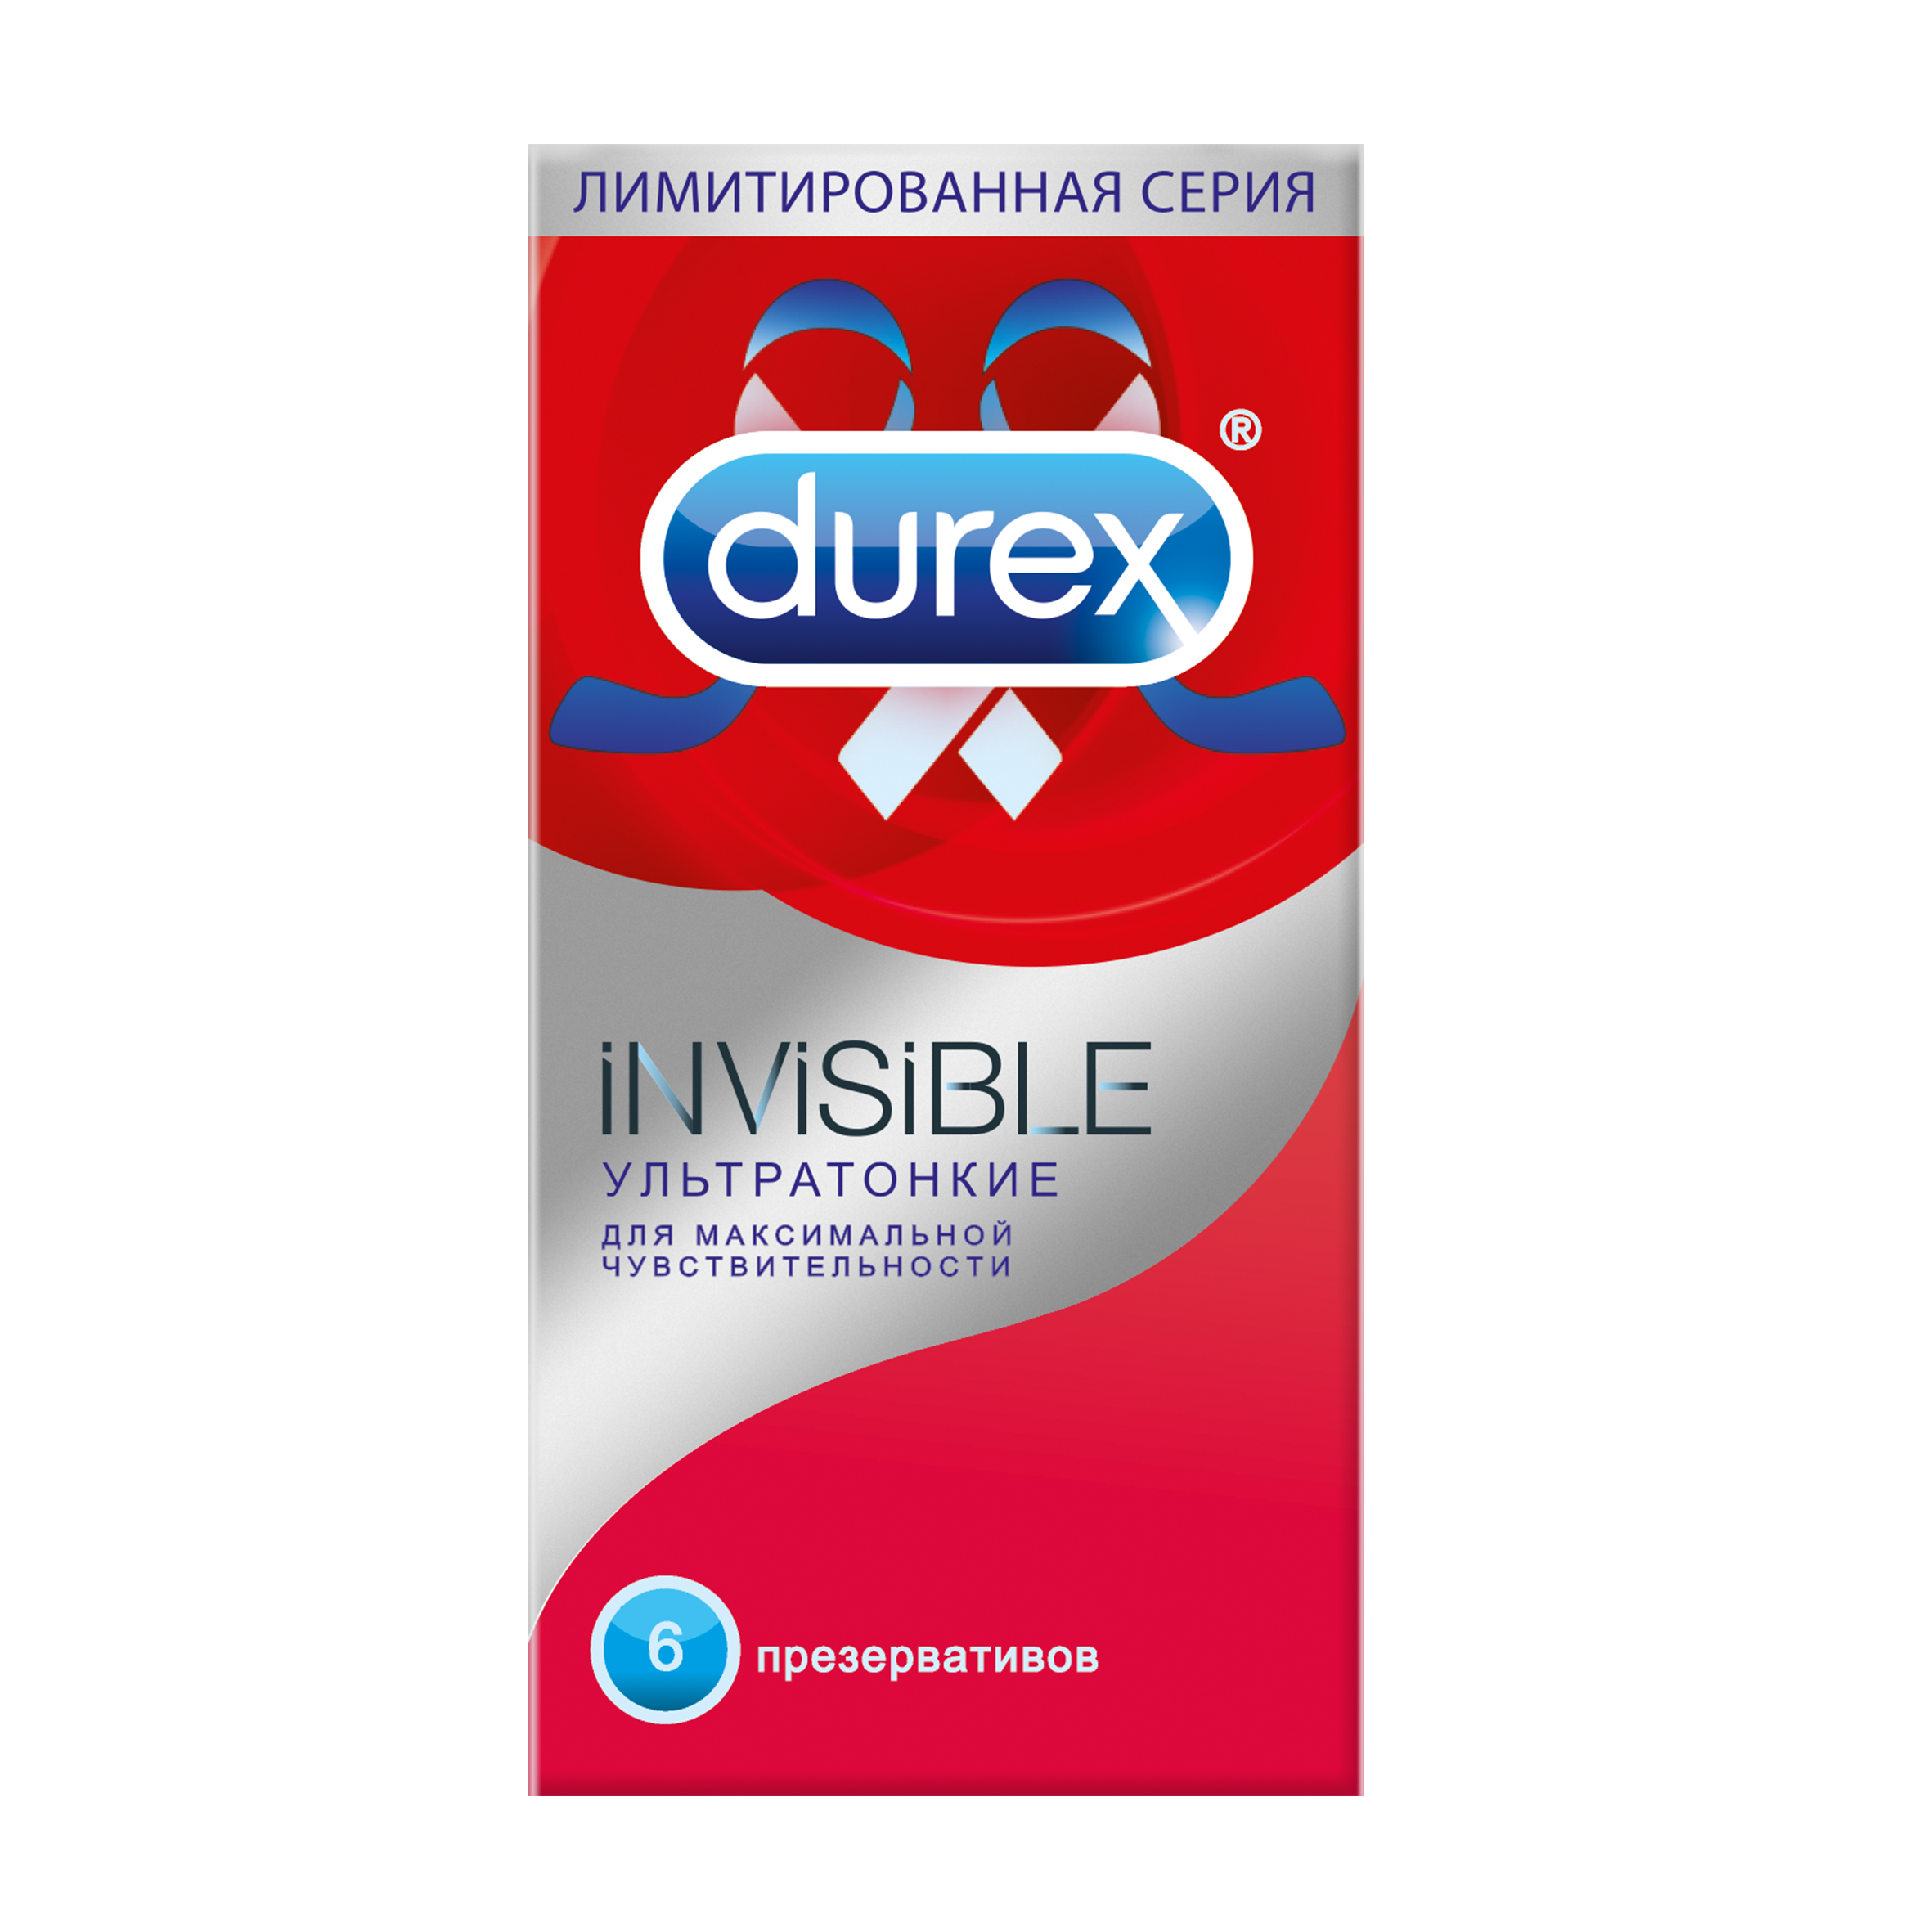 Купить Презервативы Durex Invisible ультратонкие N6